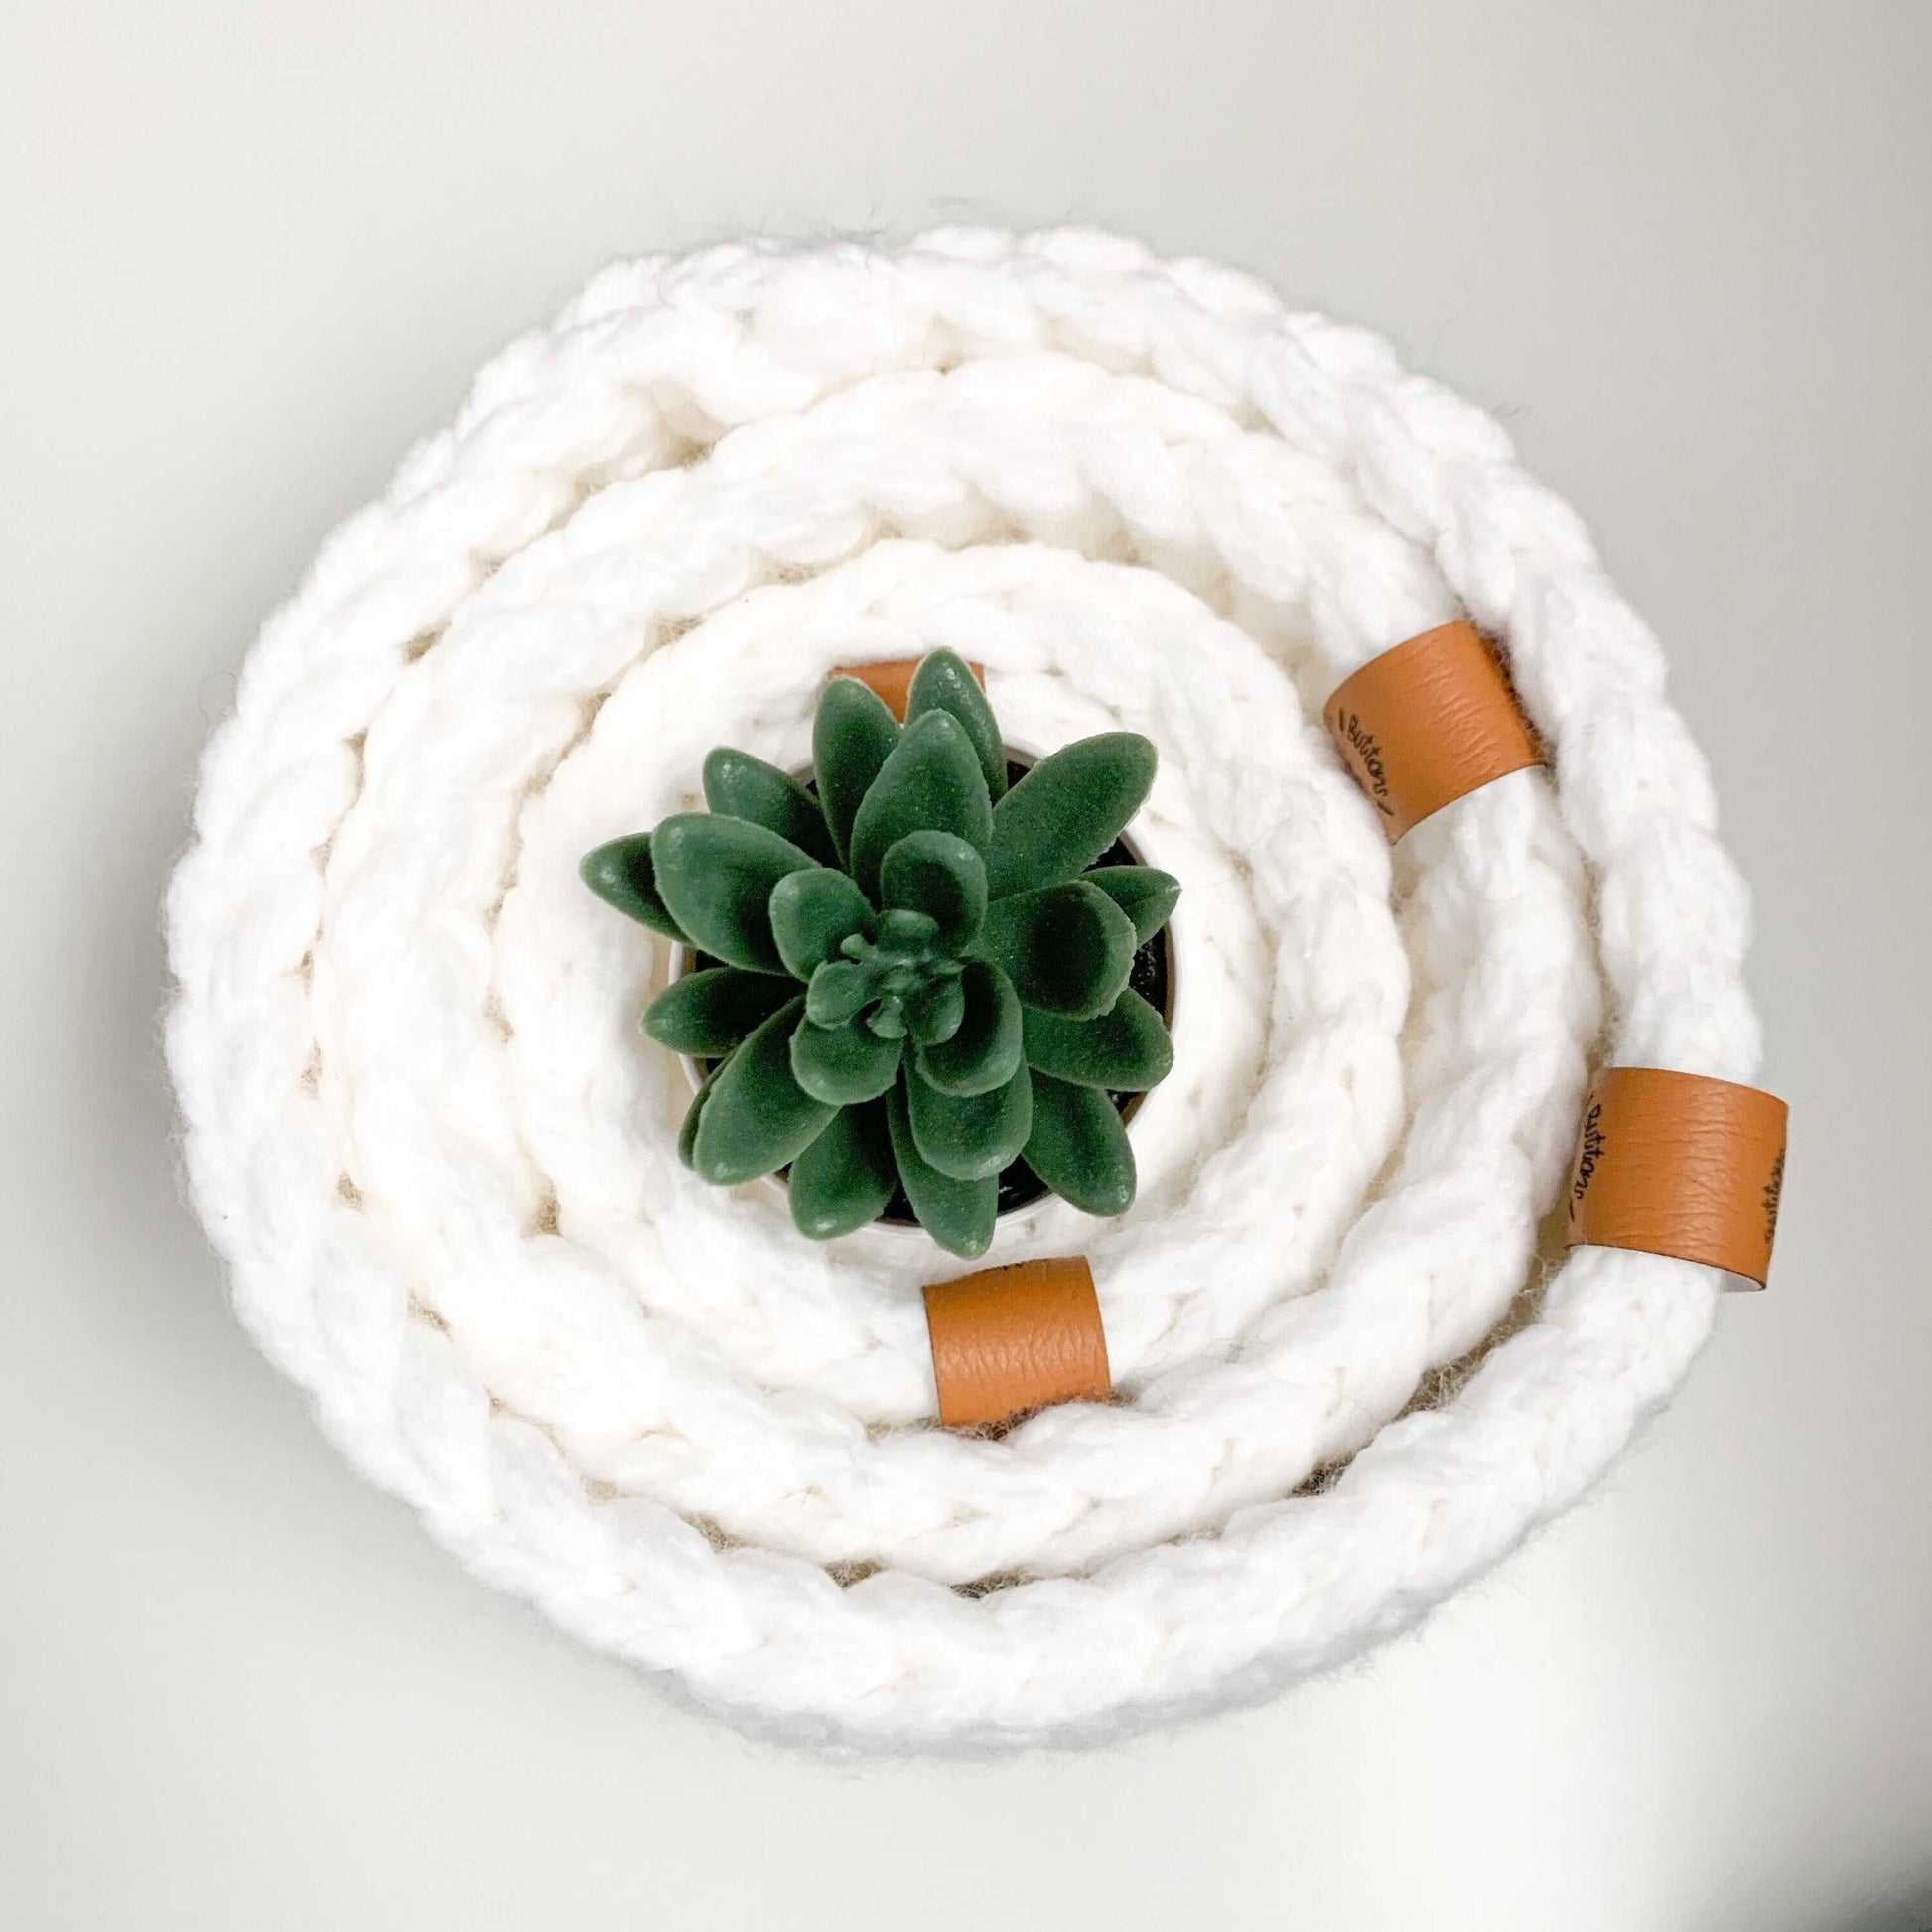 Crochet Basket | White | Storage Decor Home decor 11 $ Buttons & Beans Co.